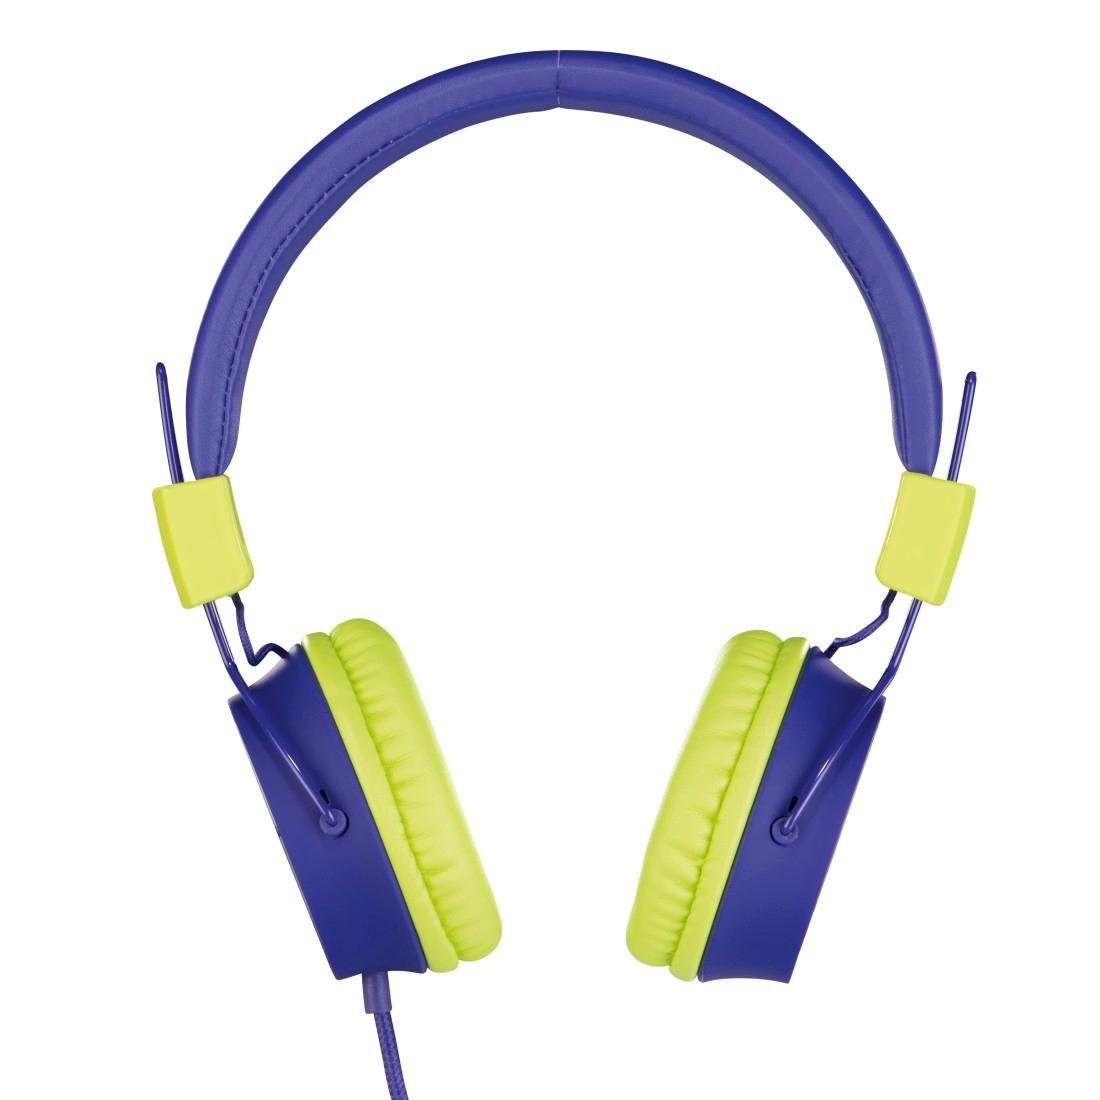 Kabel blau Thomson leicht 85dB Kinderkopfhörer auf möglich) Lautstärkebegrenzung (größenverstellbar On-Ear-Kopfhörer weiterer On-Ear, zusammenfaltbar, mit Kopfhöreranschluss